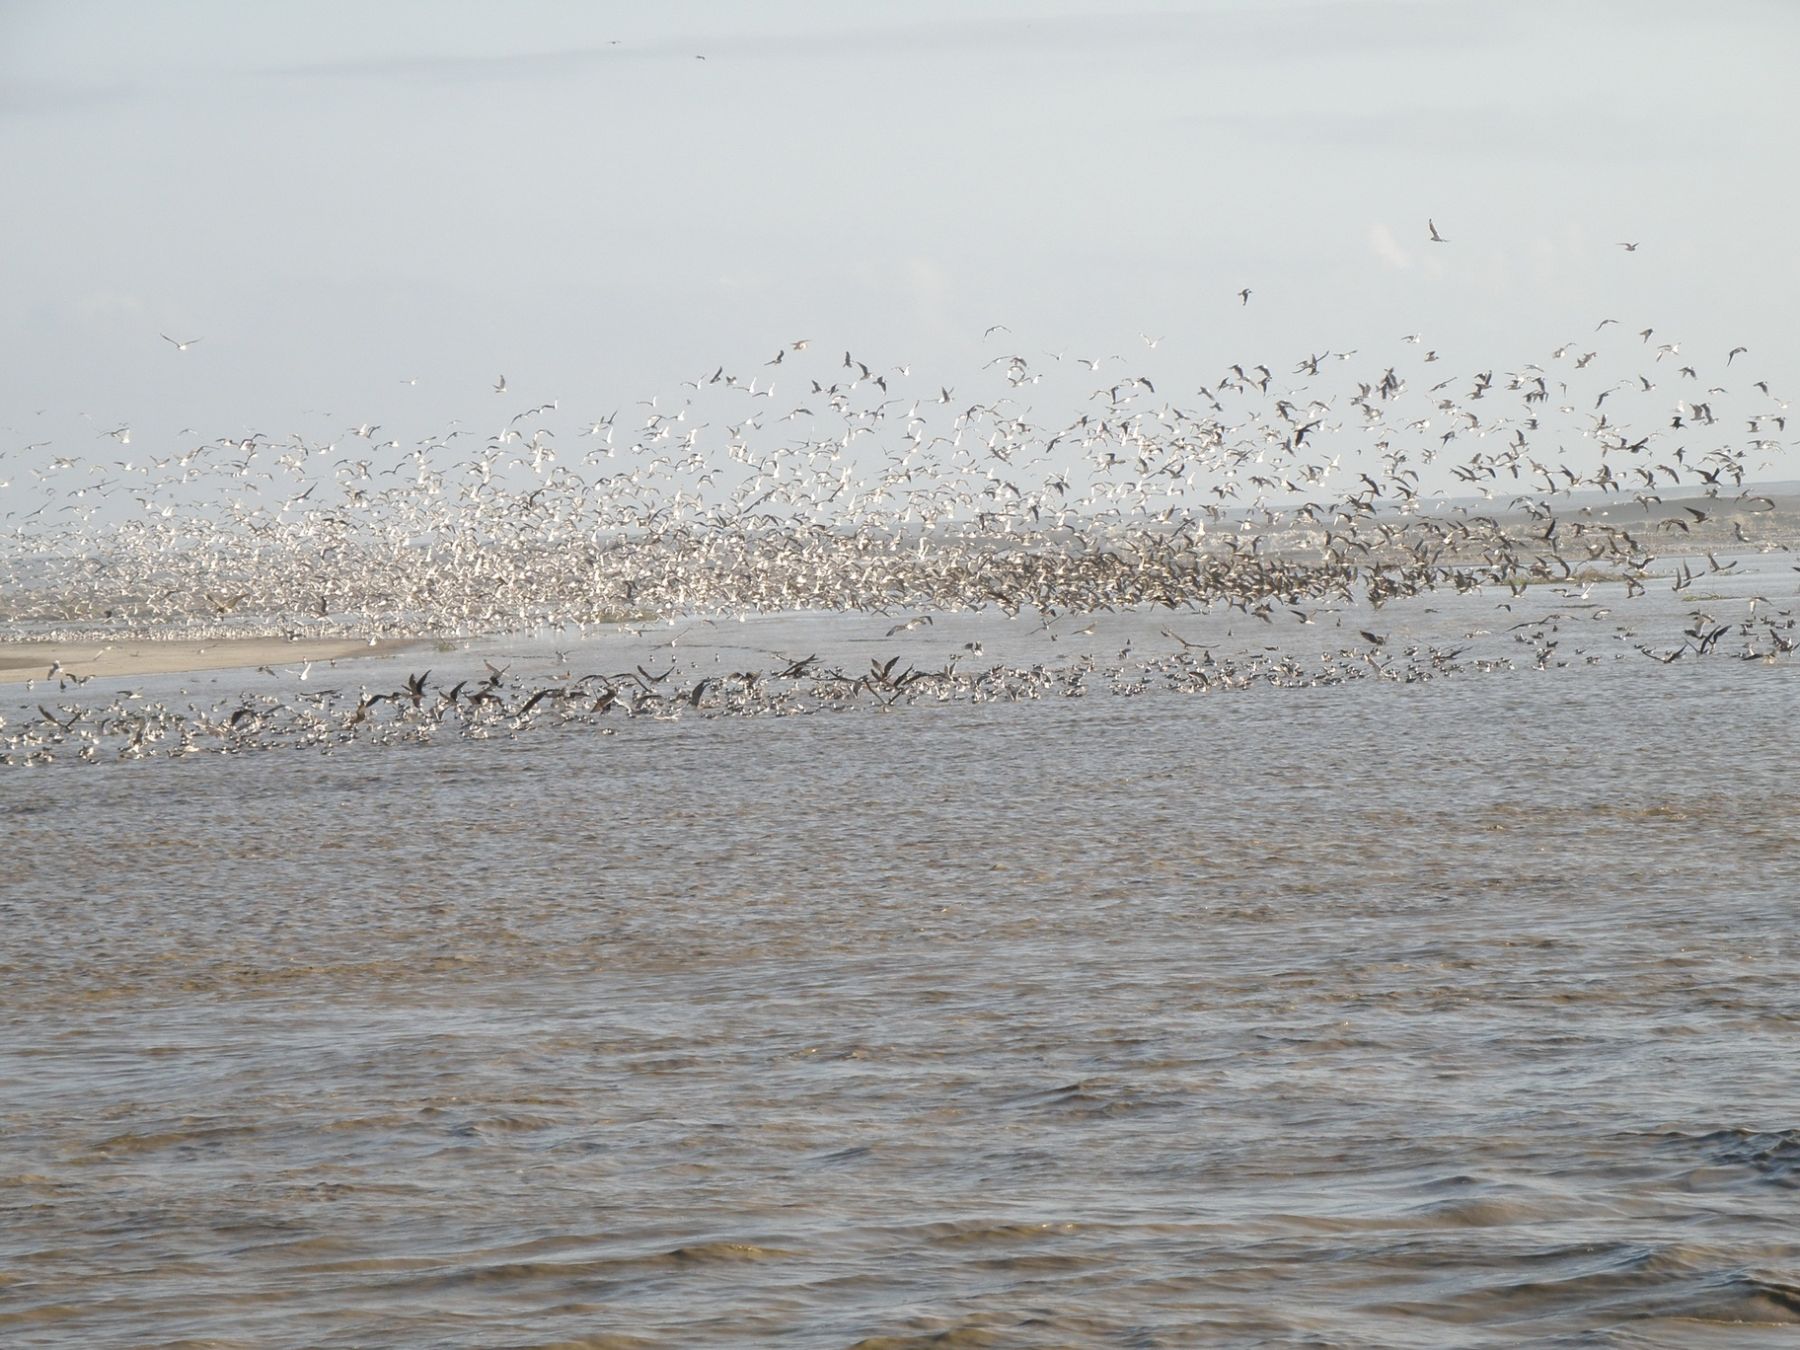 En Lagunas de Mejía habitan 195 especies de aves, entre residentes y migratorias. Por ese motivo este es un lugar ideal para la observación de aves. Foto: Andina/Sernanp